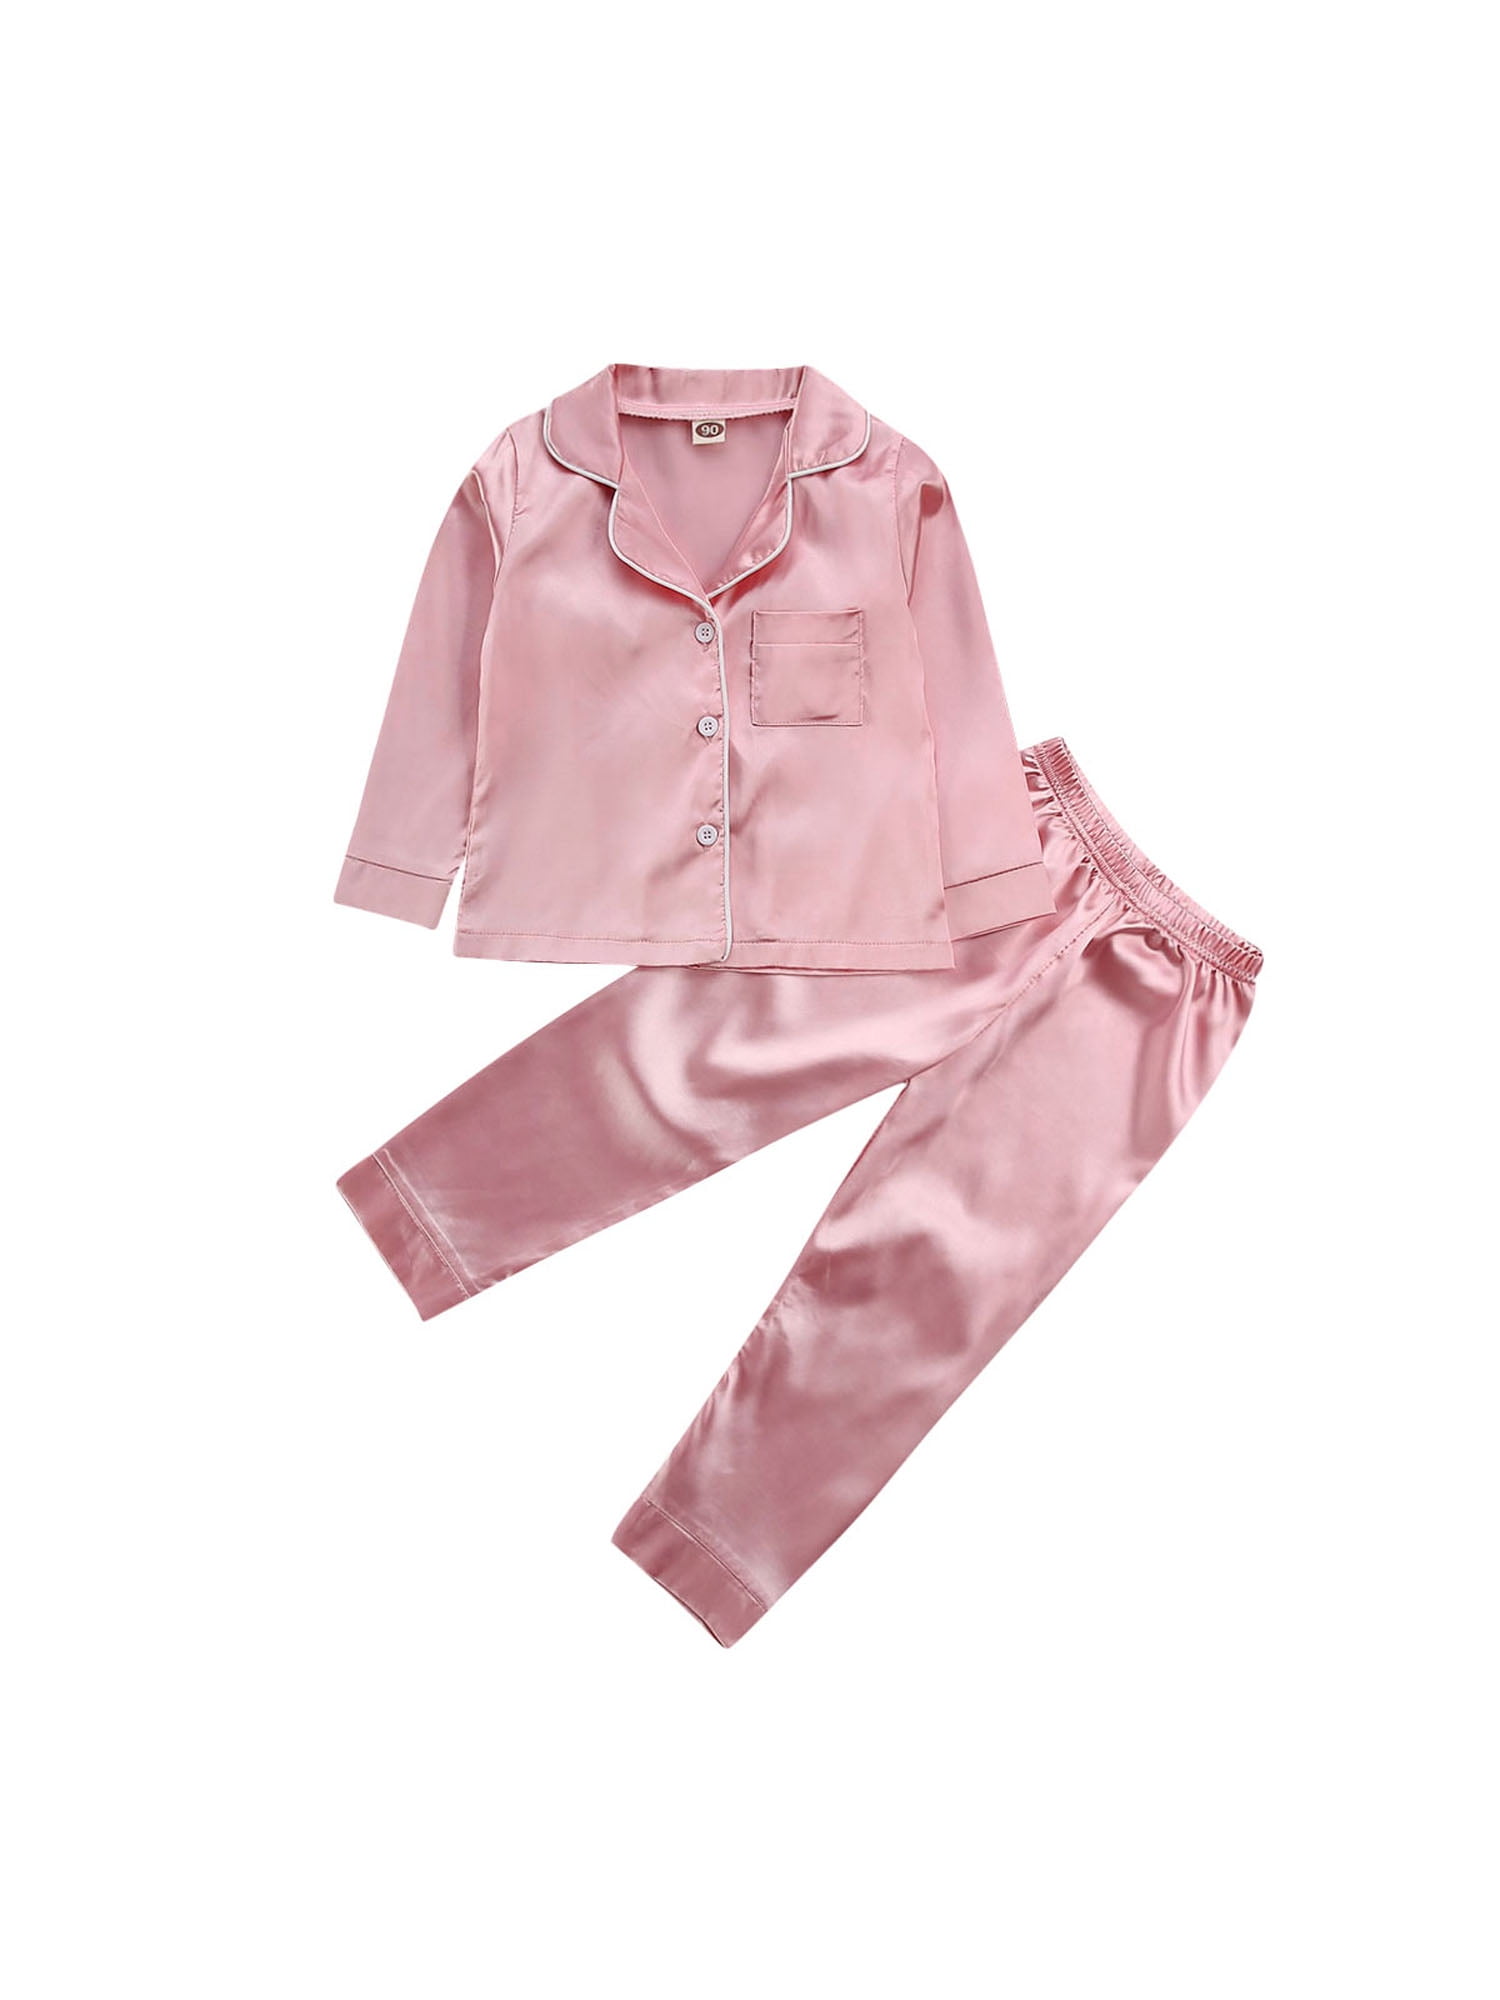 Alcea Rosea Kids Silky Satin Pajamas Set Sleepwear Loungewear Long Sleeves with Pants Pjs Girls Button Down Pjs for Boys